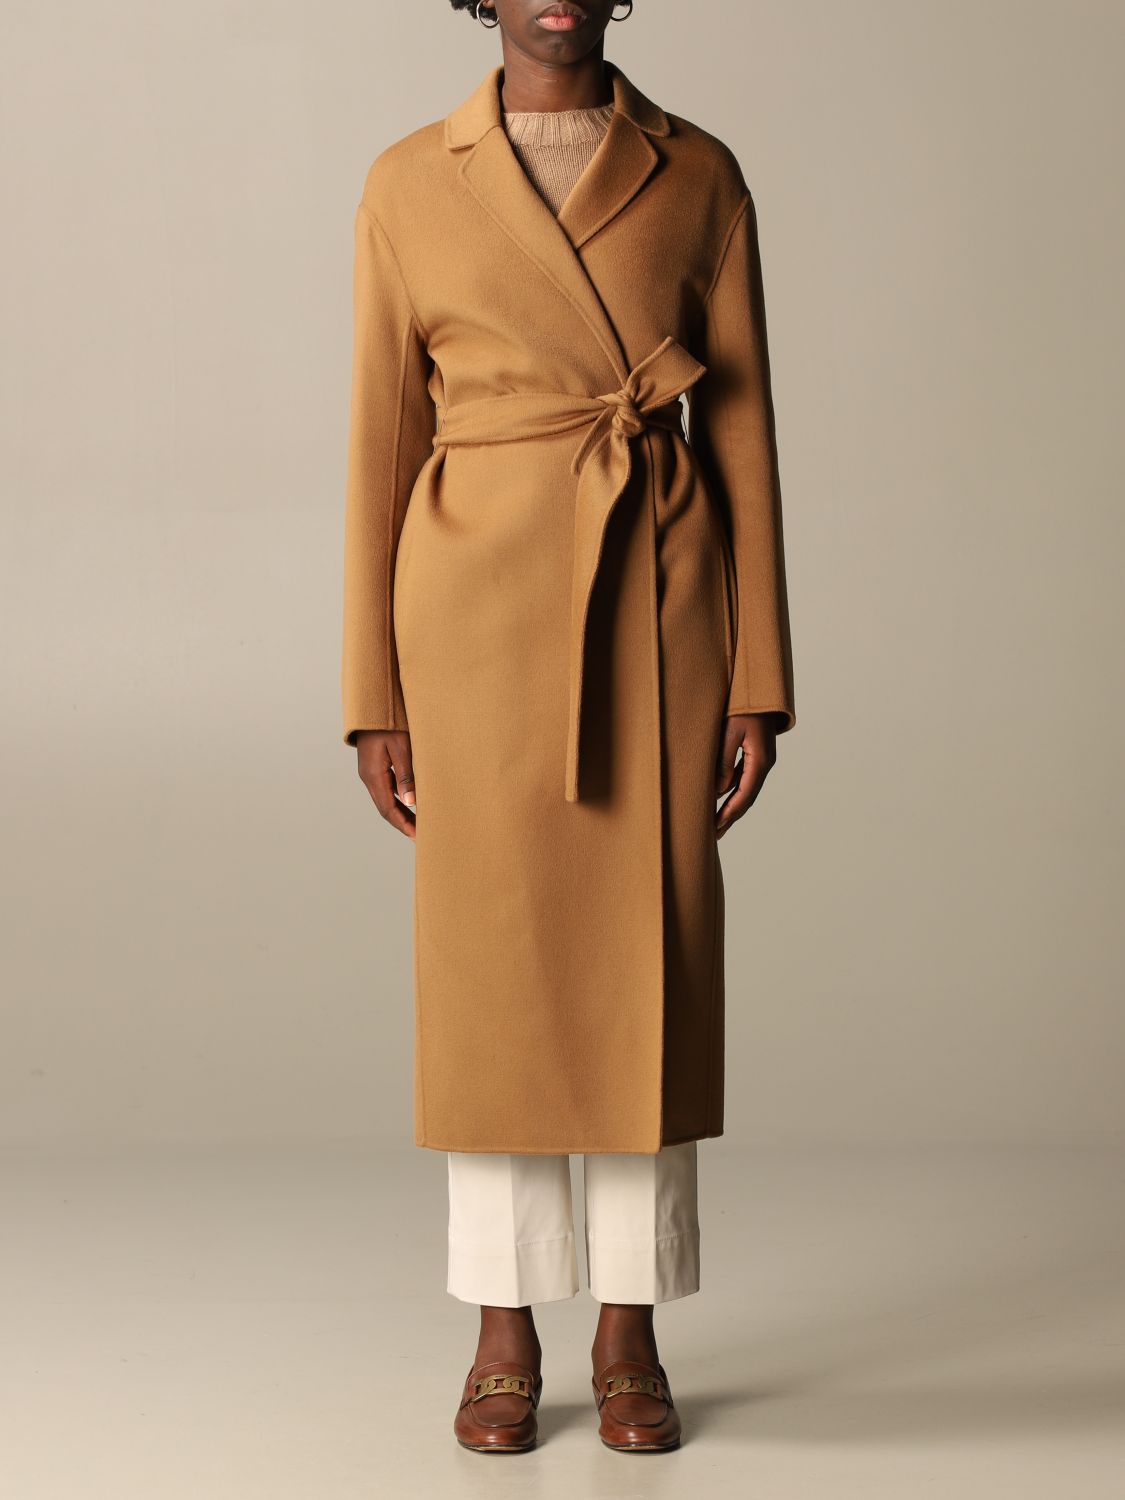 S Max Mara wrap coat | Coat S Max Mara Women Camel | Coat S Max Mara